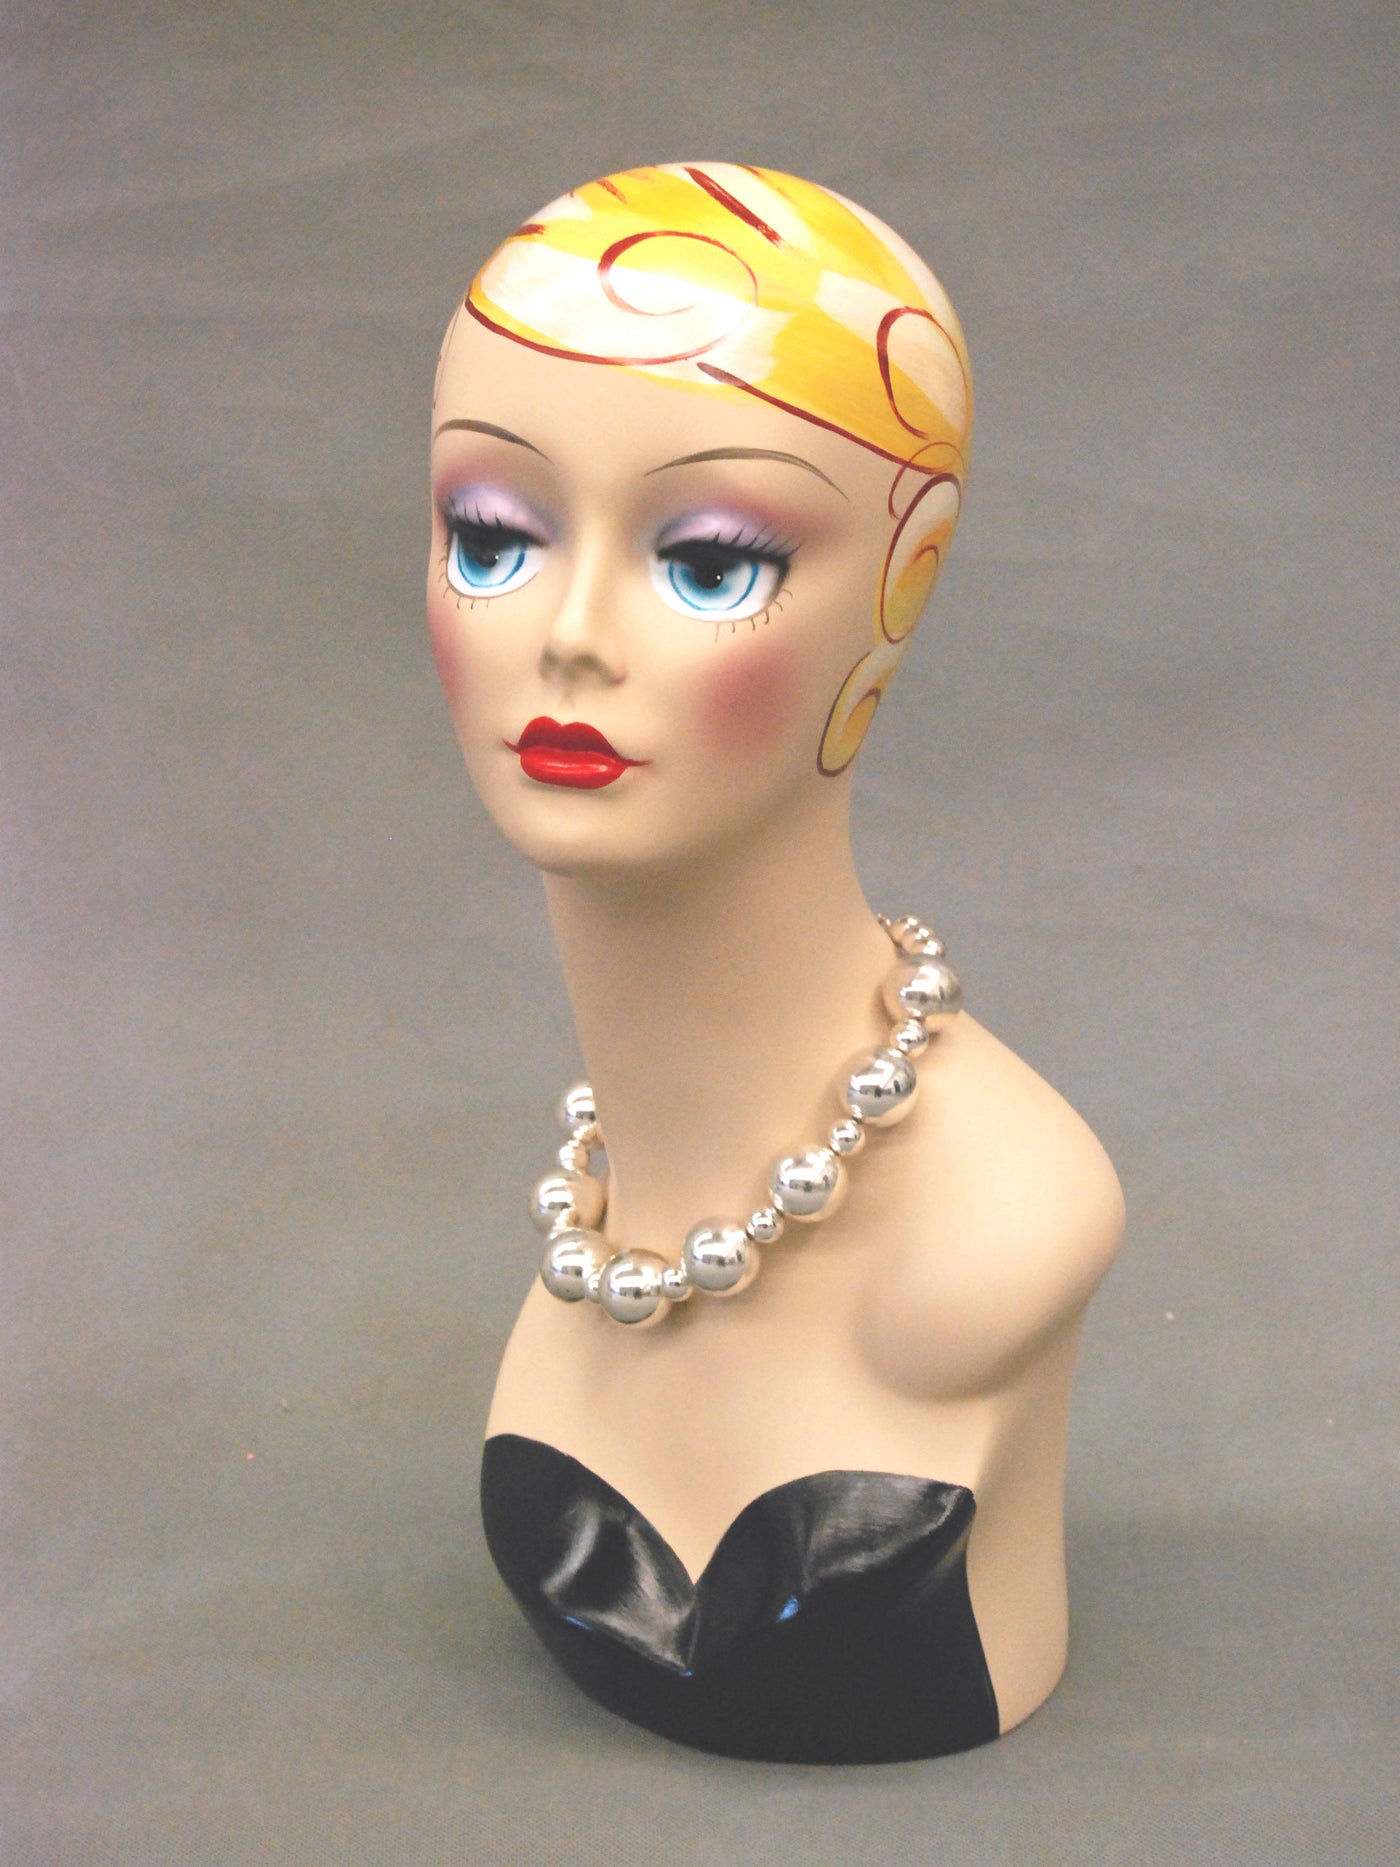 Vintage-style Female Head: Veronica 2